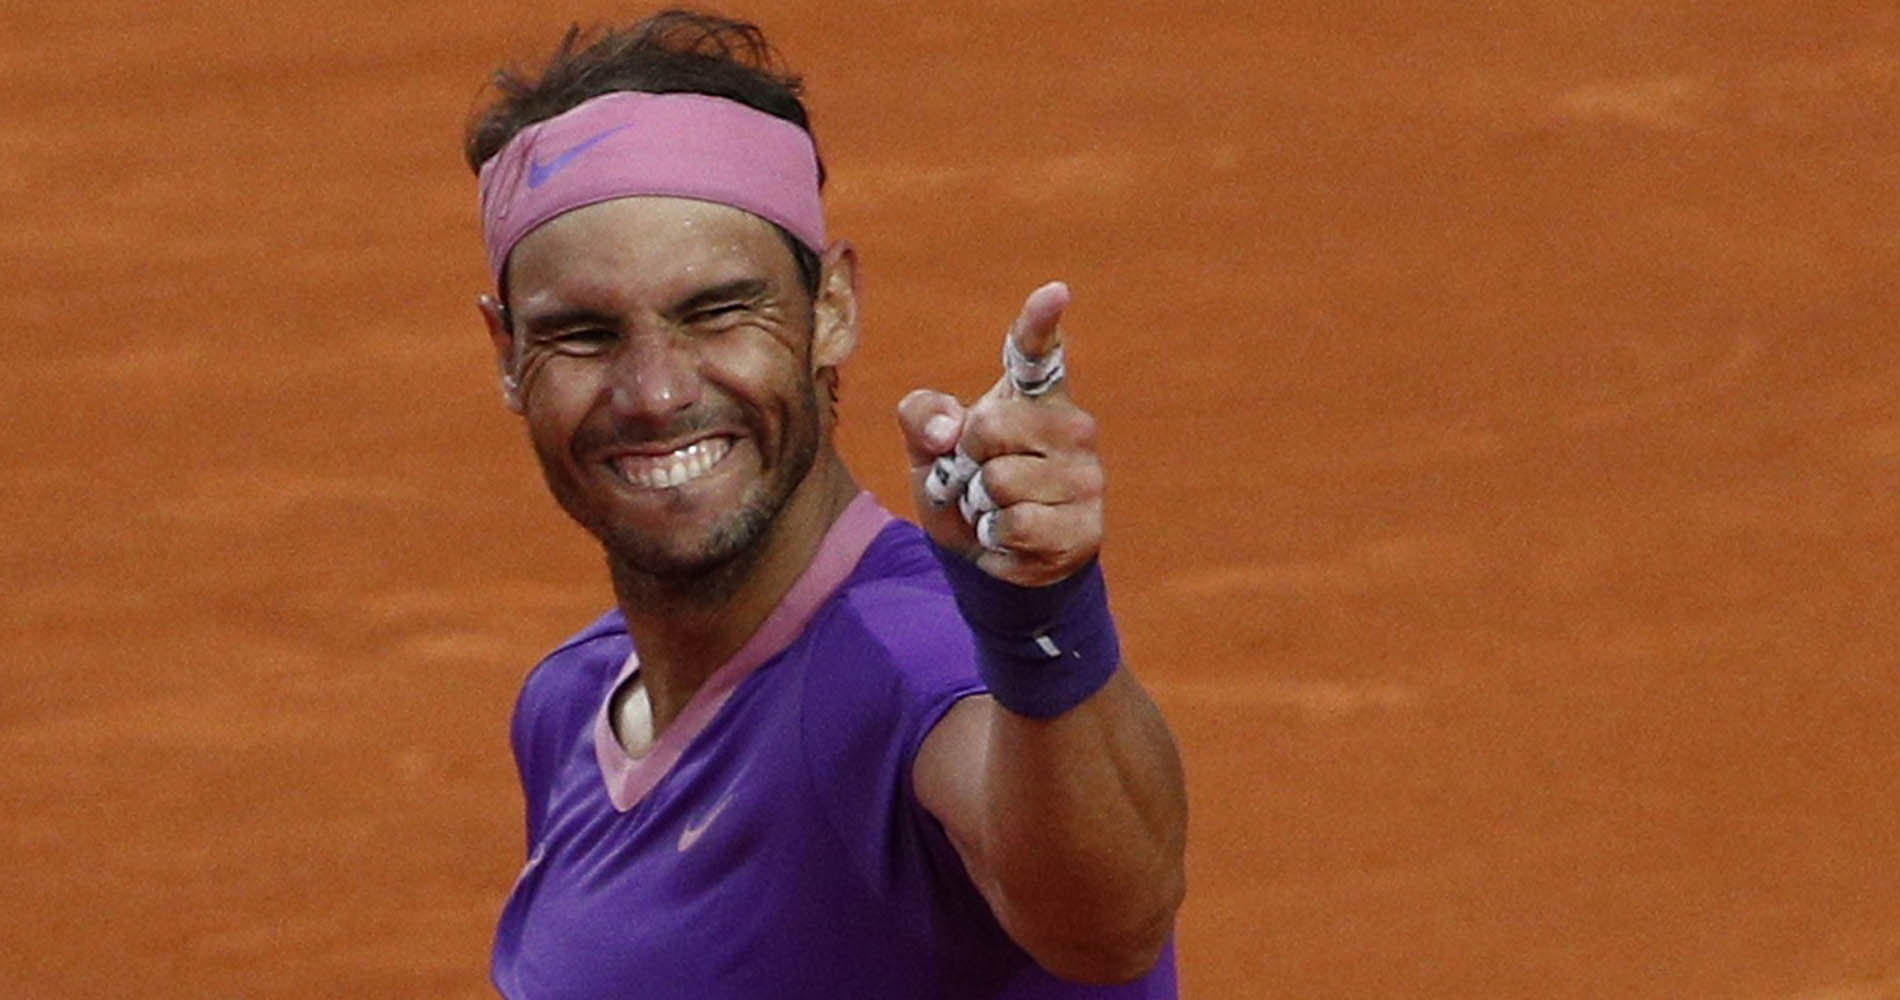 Rafael Nadal Rome 2021